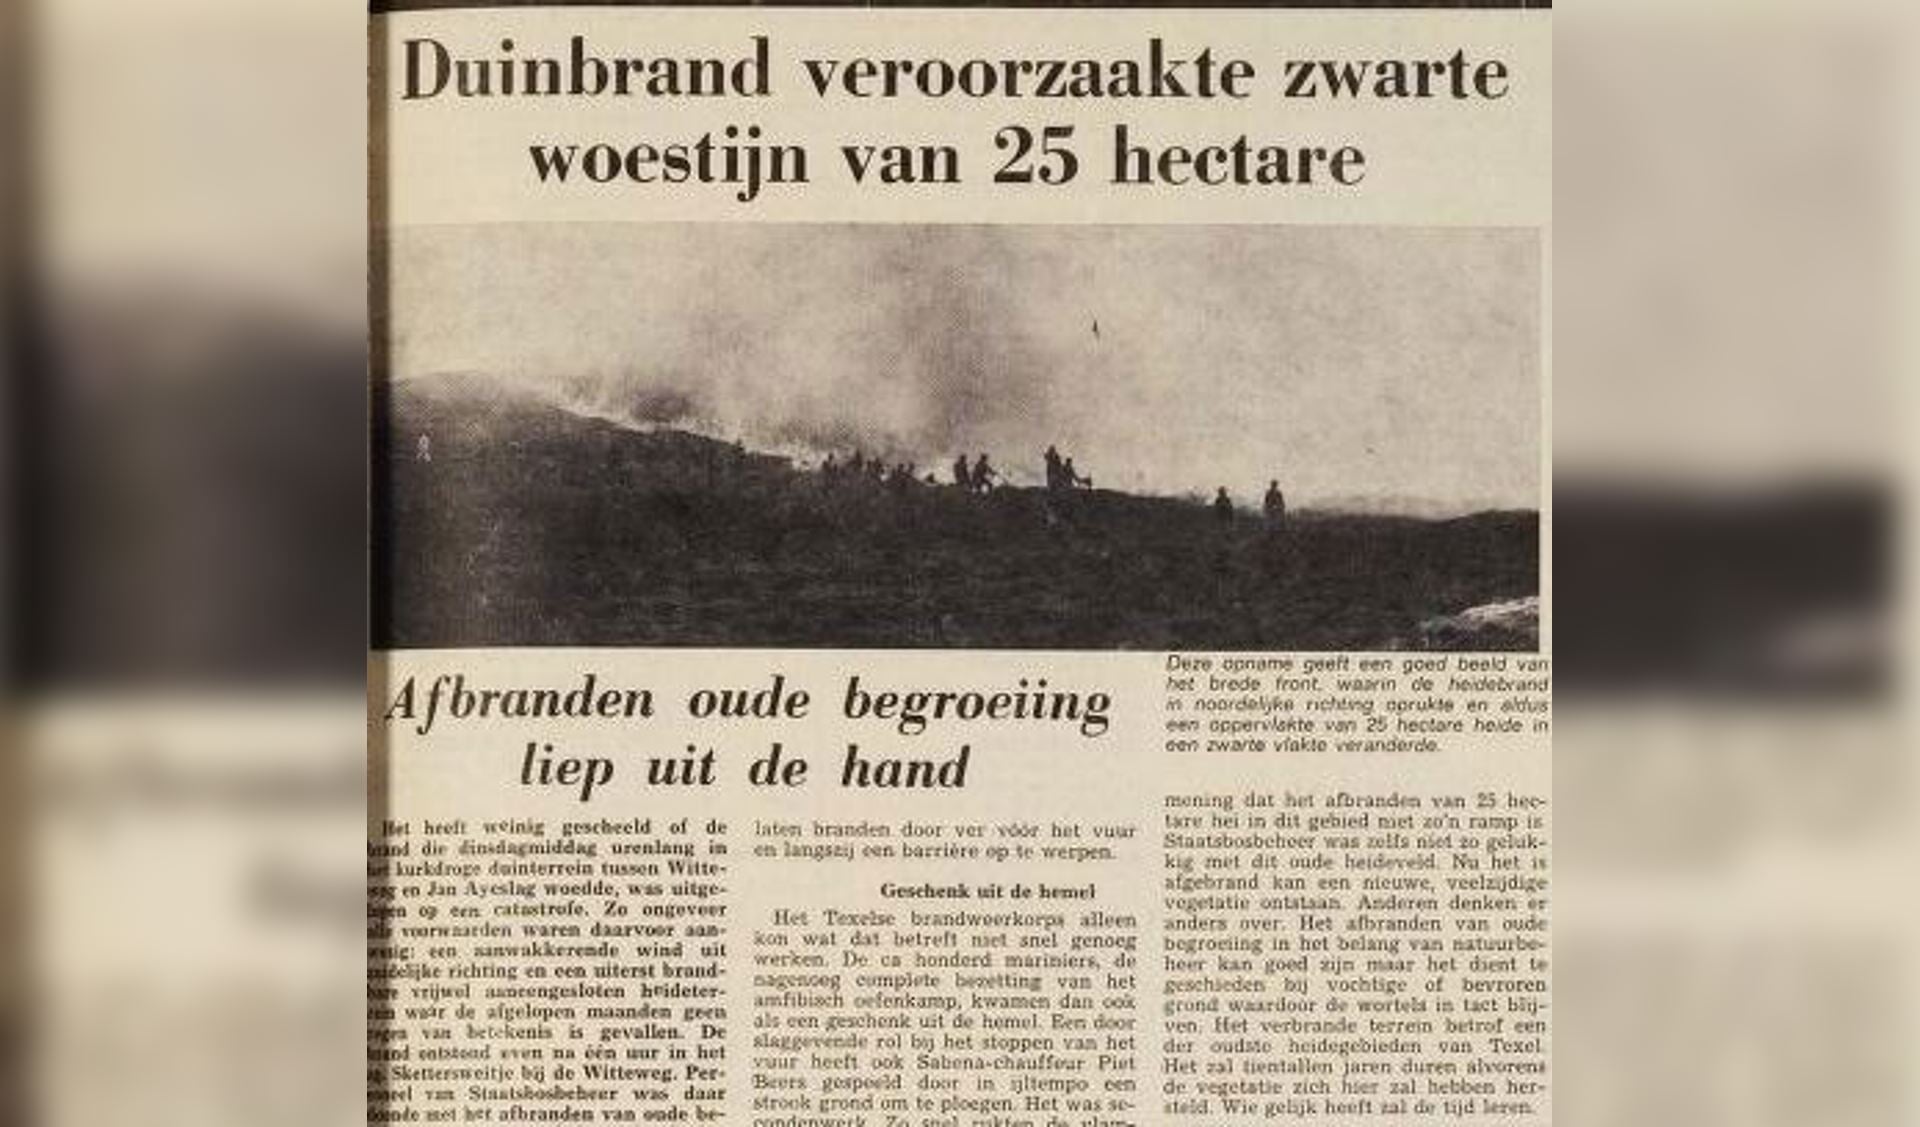 Een grote duinbrand in 1972.